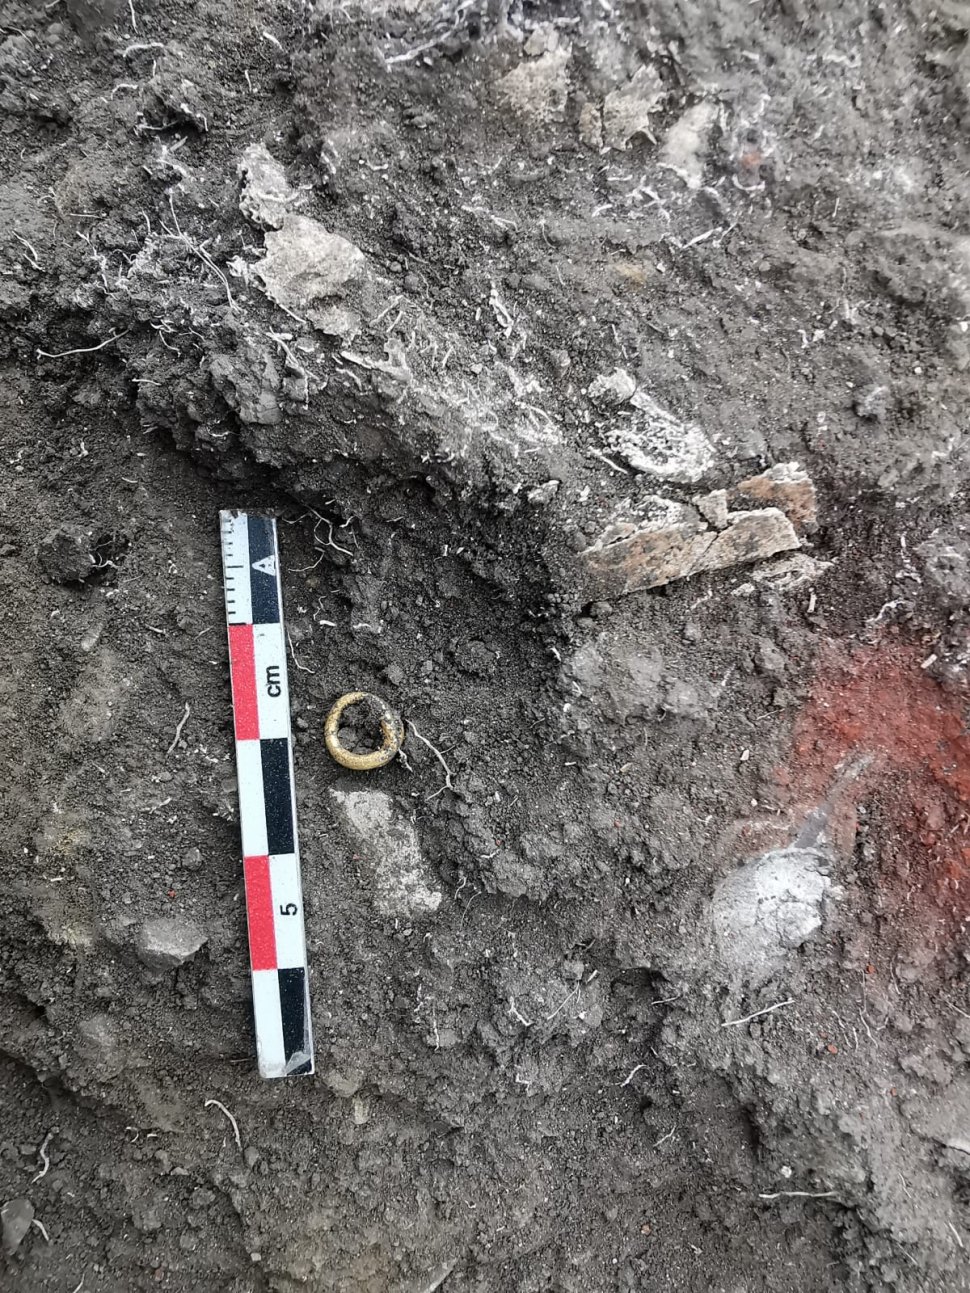 Morminte din epoca bronzului, vechi de 5000 de ani, descoperite lângă Ploiești. Unul dintre ele conține osemintele unui bebeluș și un inel de buclă din aur